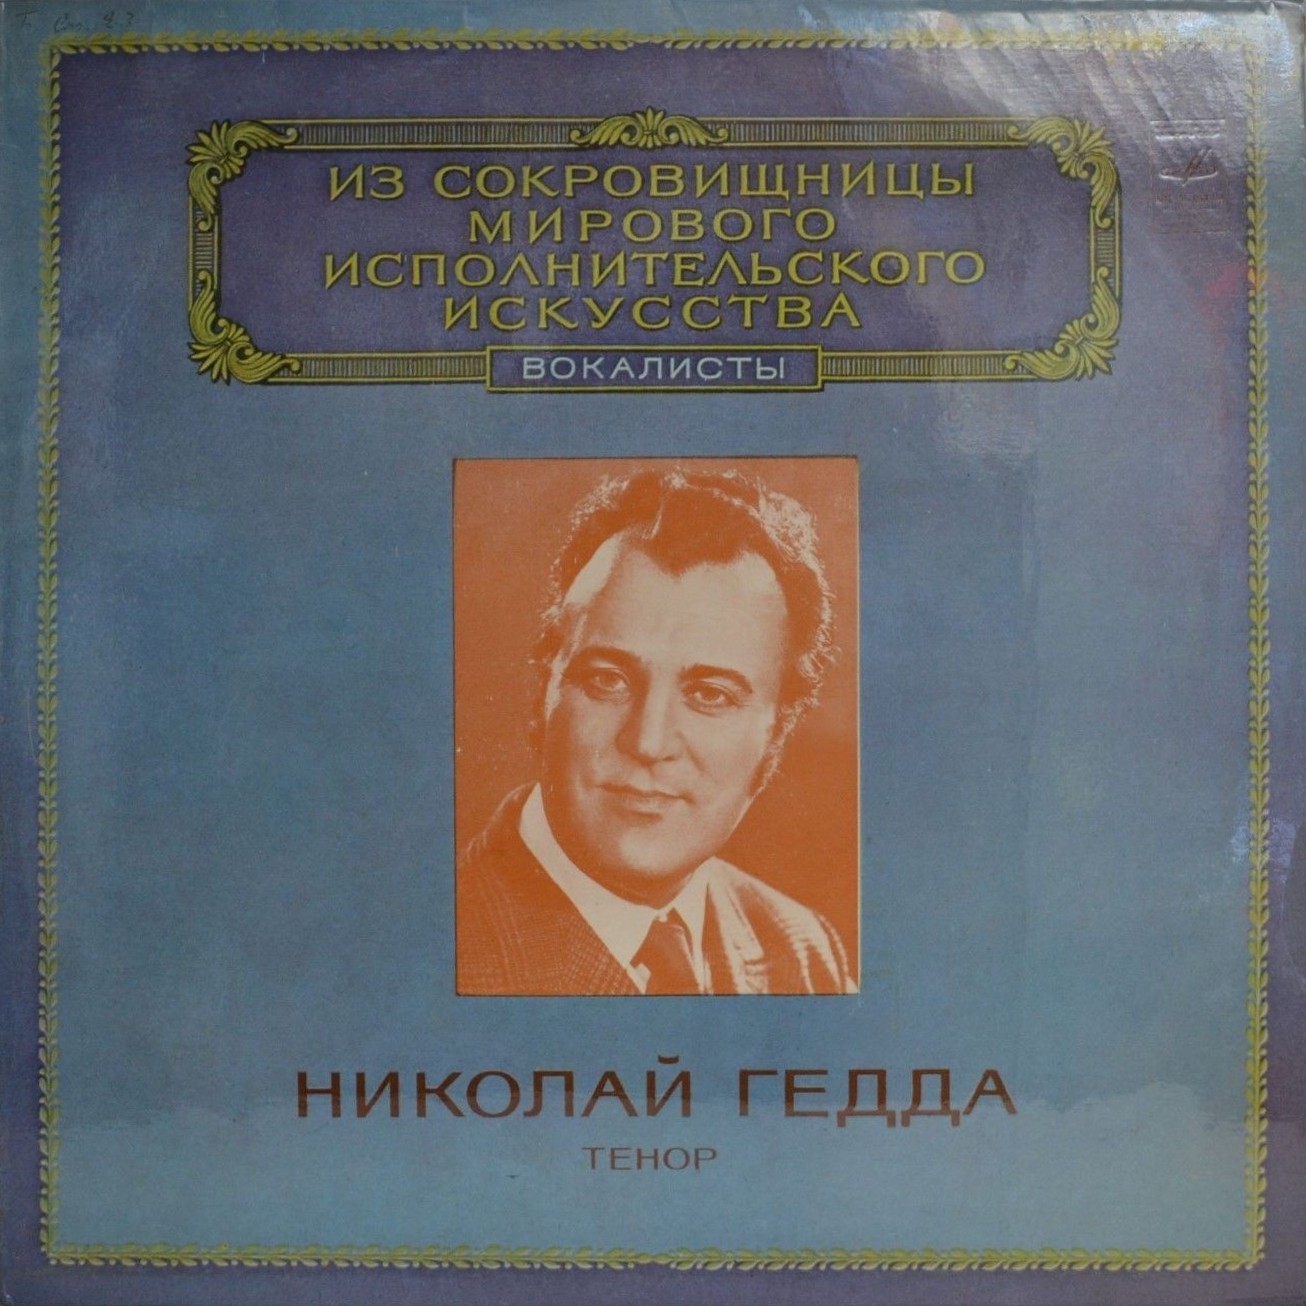 Николай Гедда, тенор